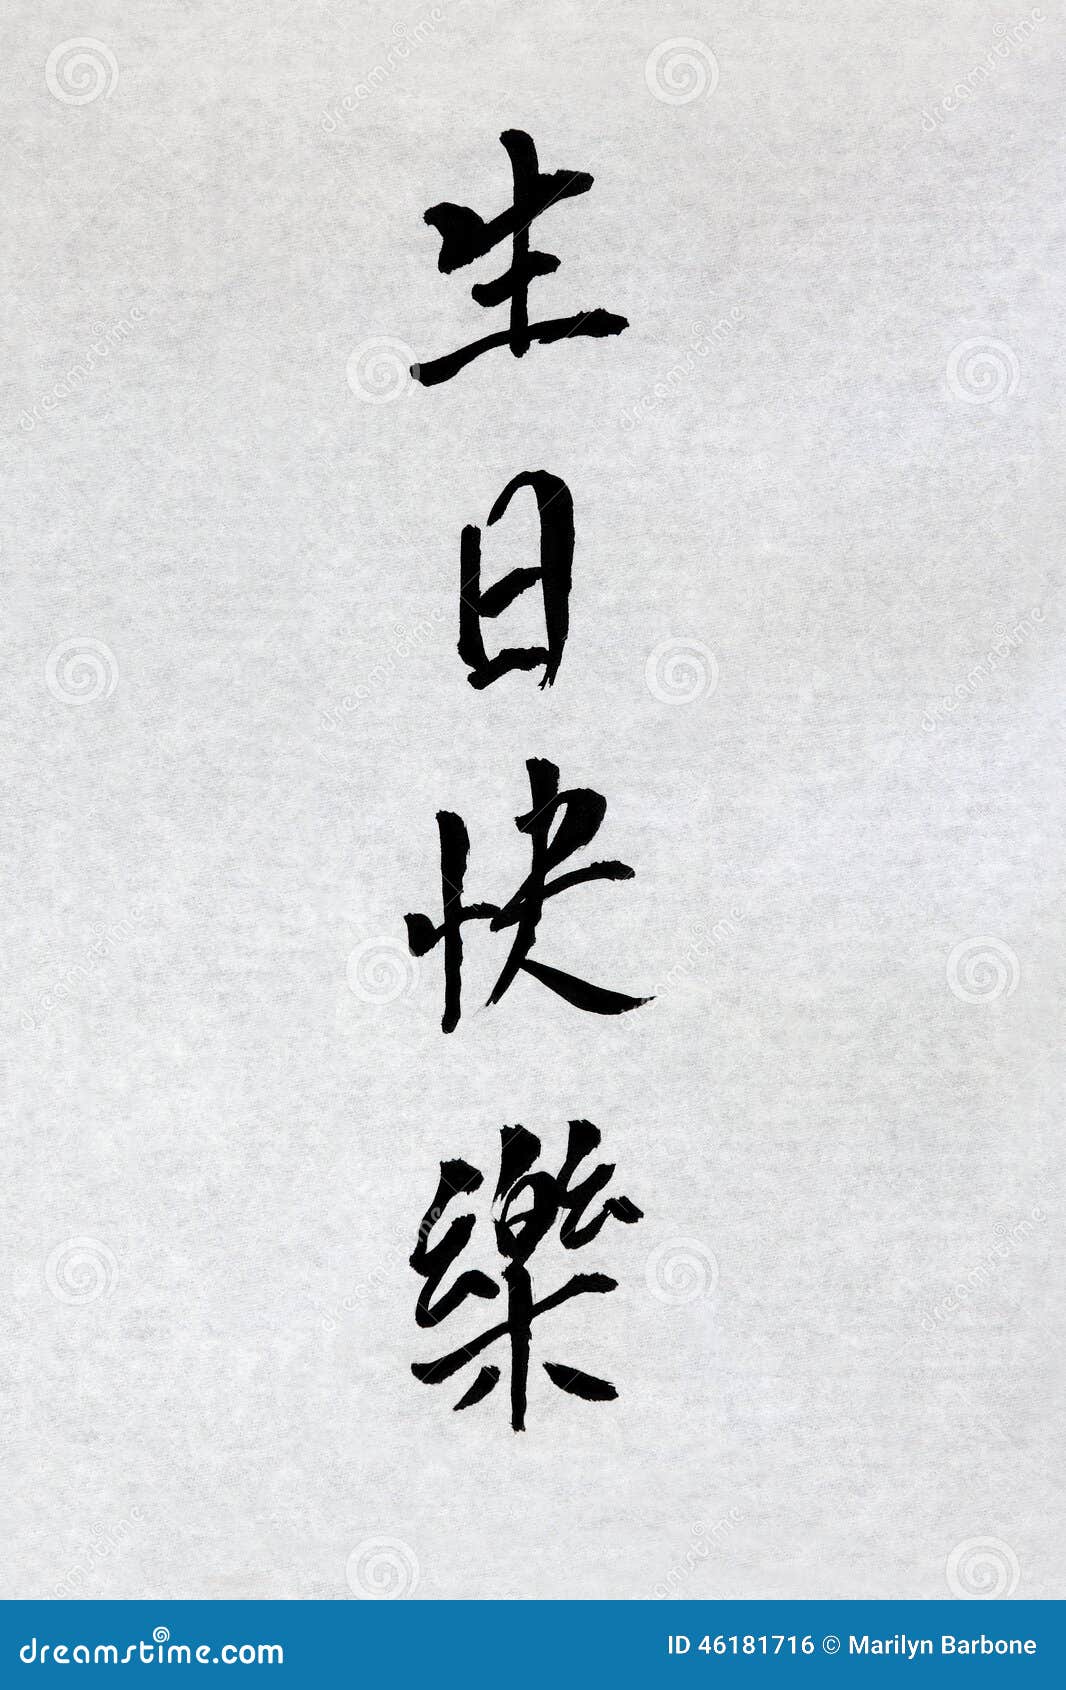 joyeux anniversaire en chinois traduction Calligraphie De Chinois De Joyeux Anniversaire Photo Stock Image joyeux anniversaire en chinois traduction